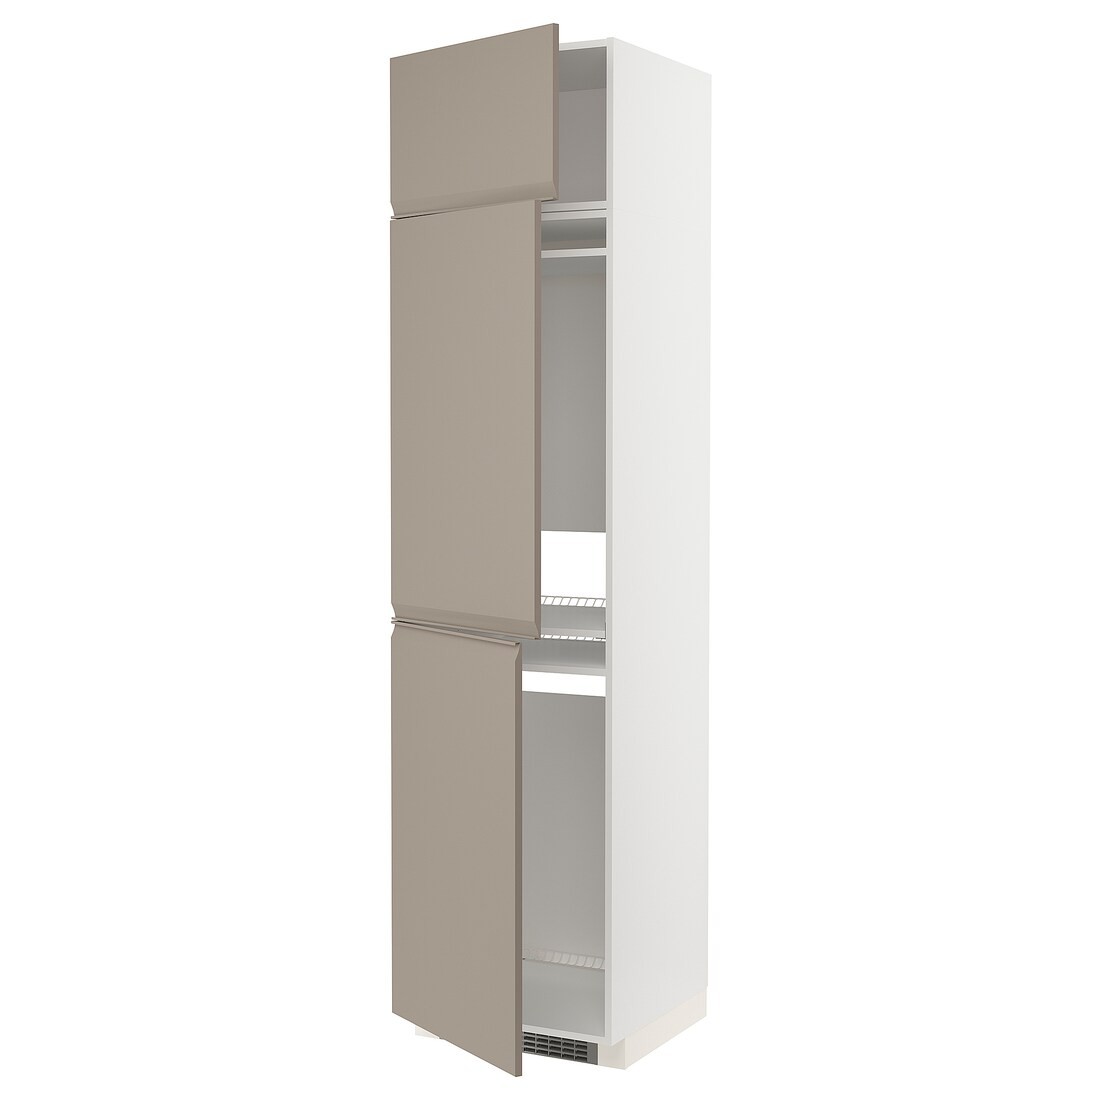 METOD МЕТОД Высокий шкаф для холодильника / морозильника / 3 дверцы, белый / Upplöv матовый темно-бежевый, 60x60x240 см